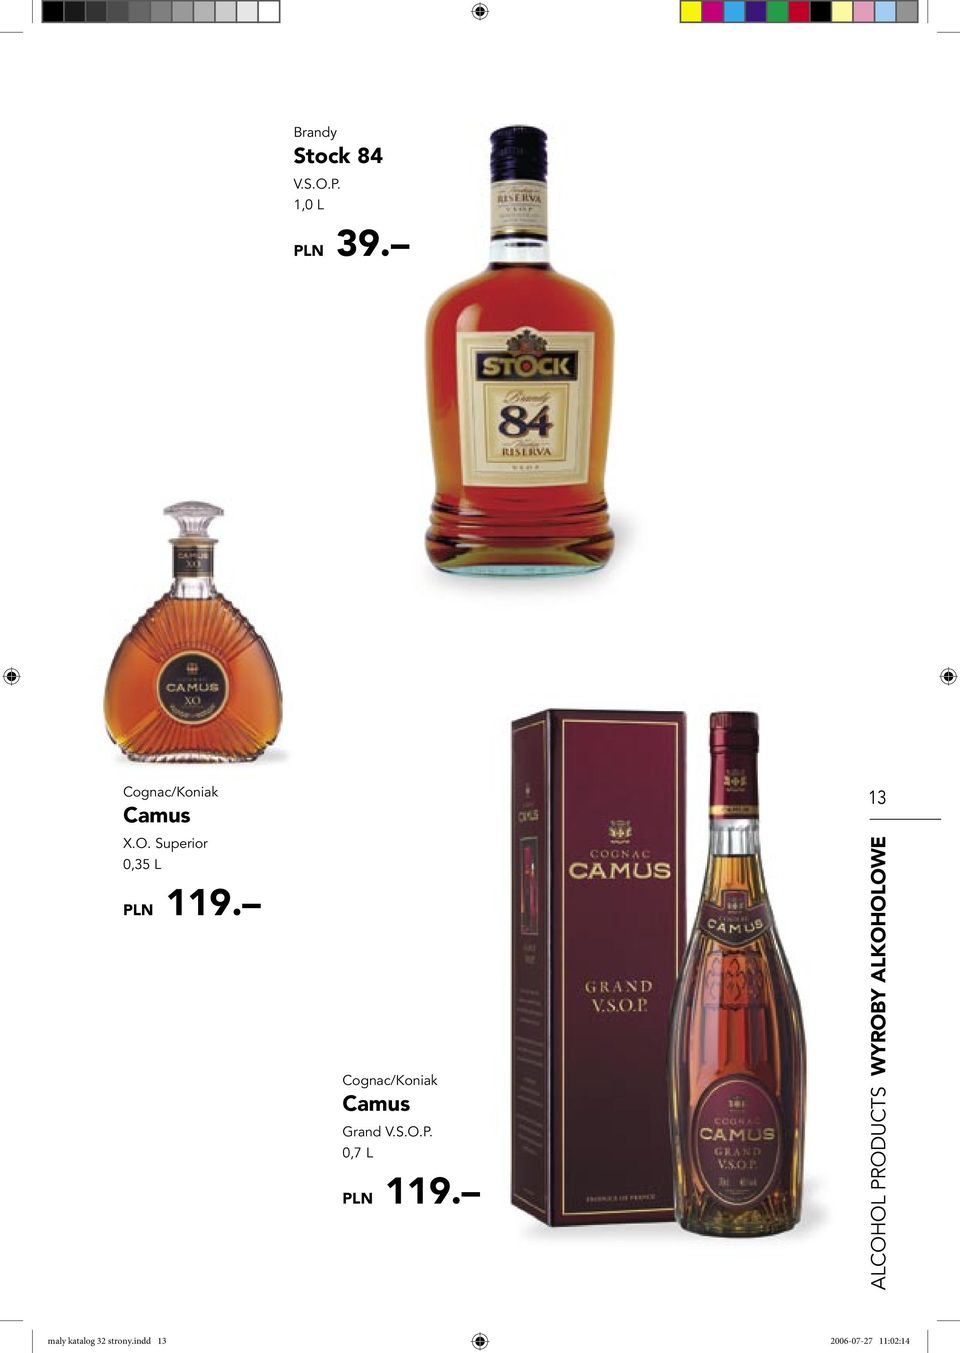 Cognac/Koniak Camus Grand V.S.O.P. 0,7 L PLN 119.